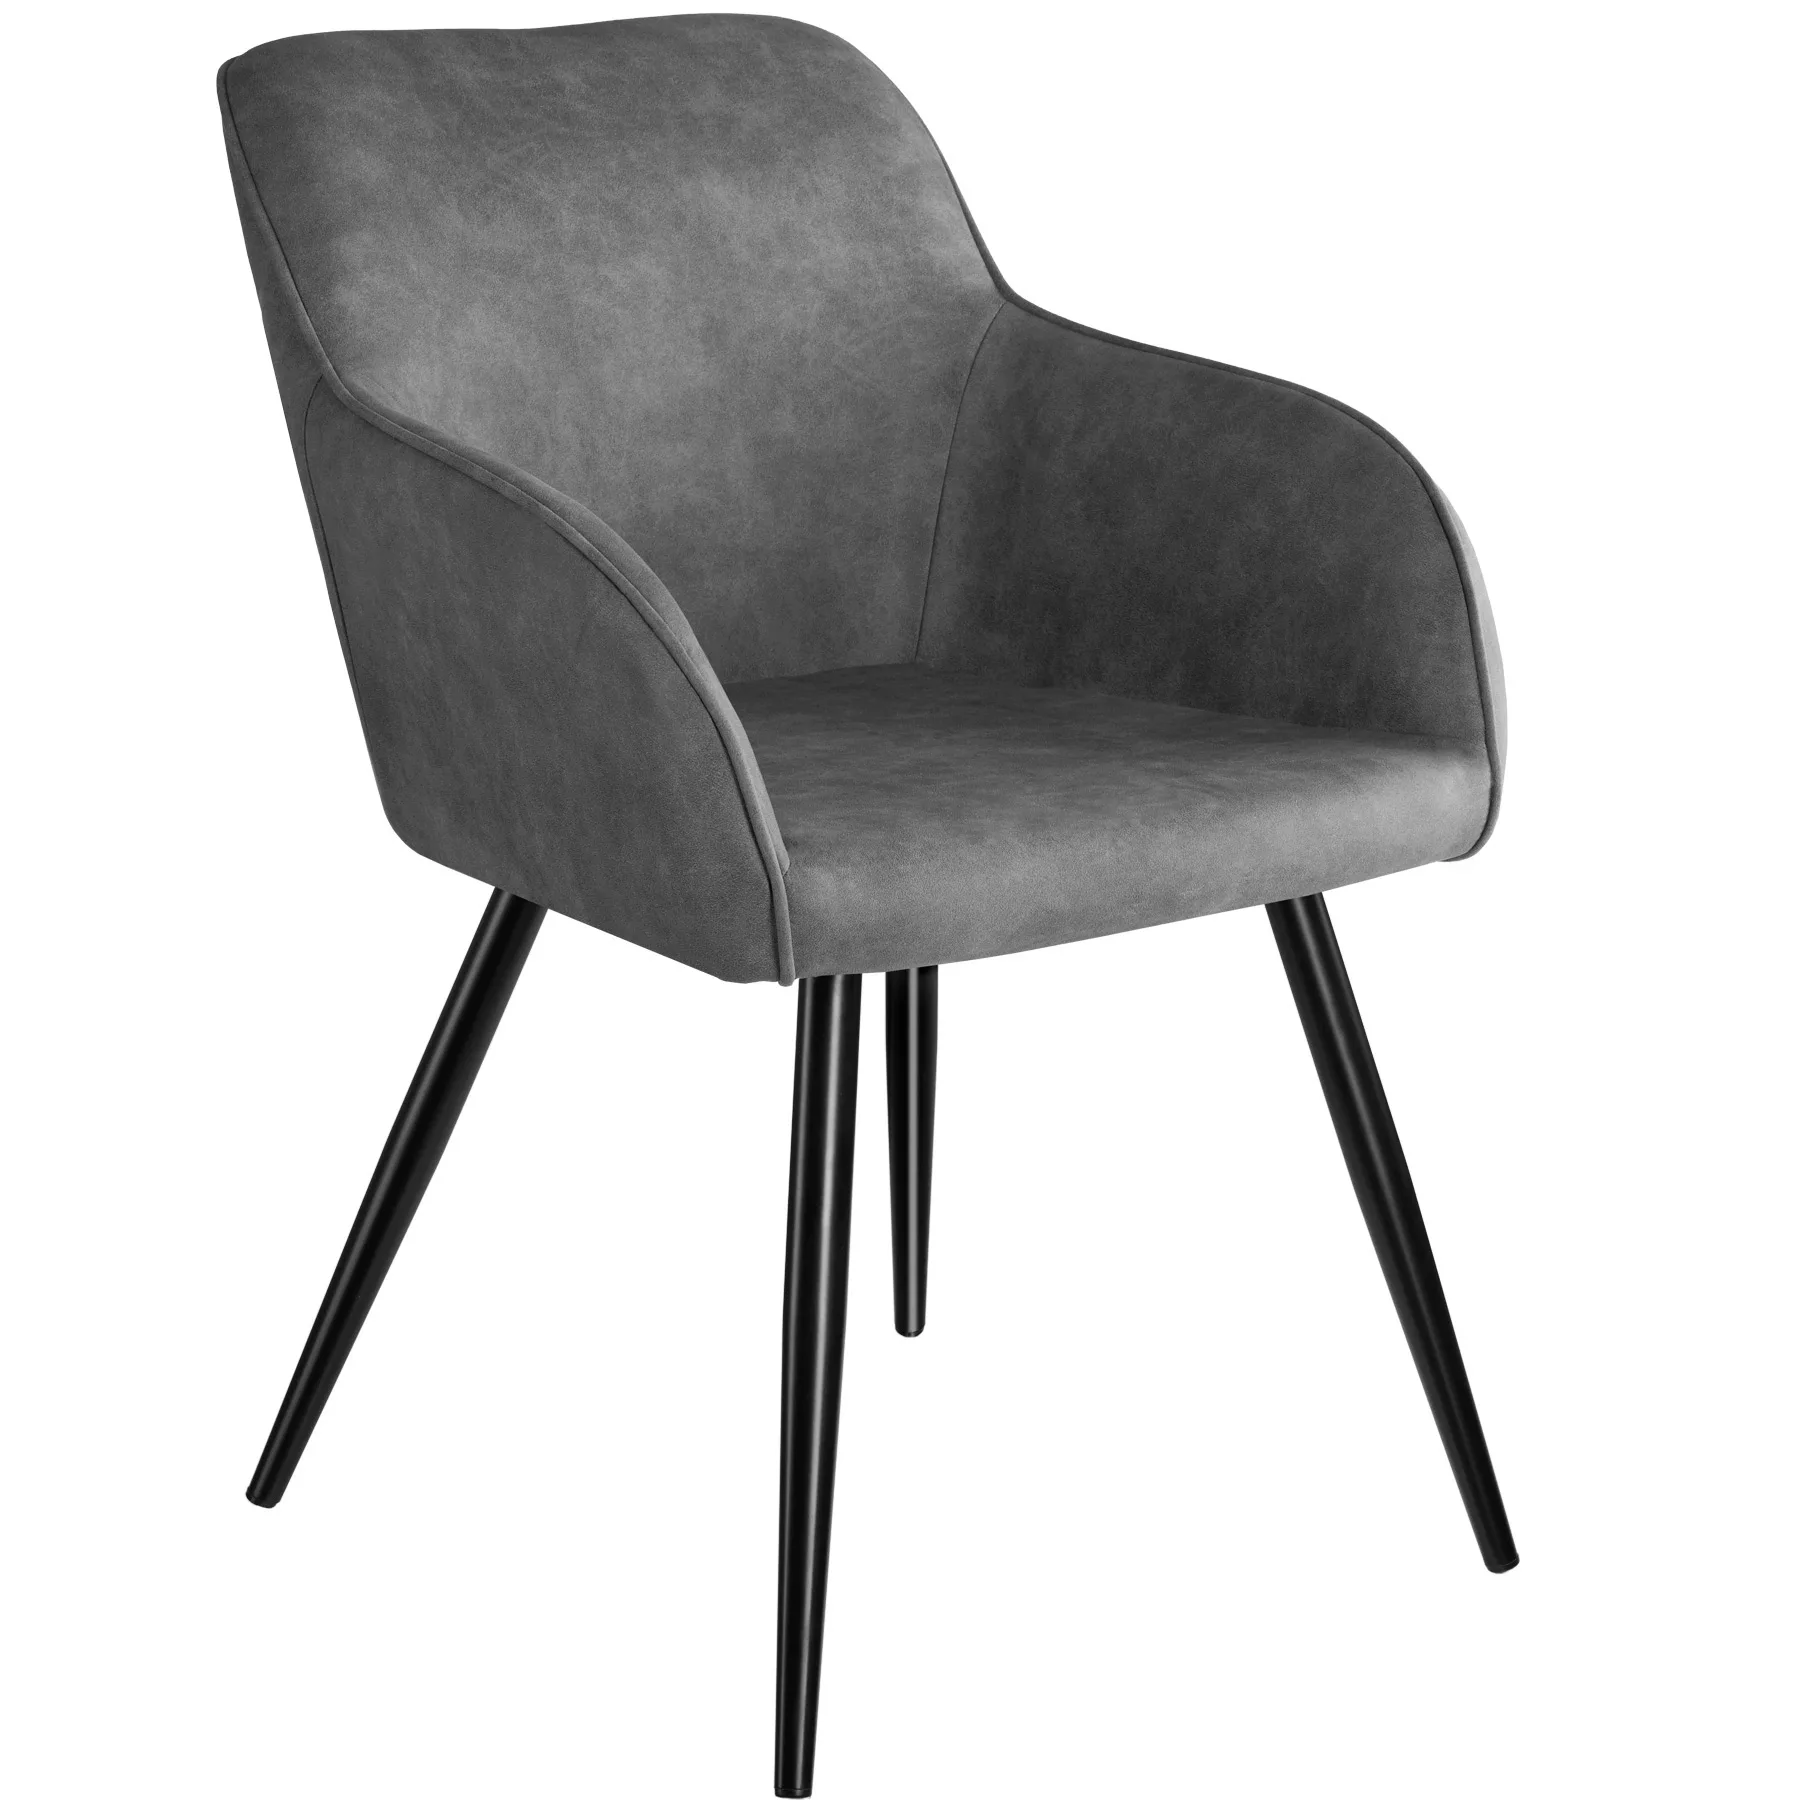 Stuhl Marilyn Stoff, schwarze Stuhlbeine - grau/schwarz günstig online kaufen